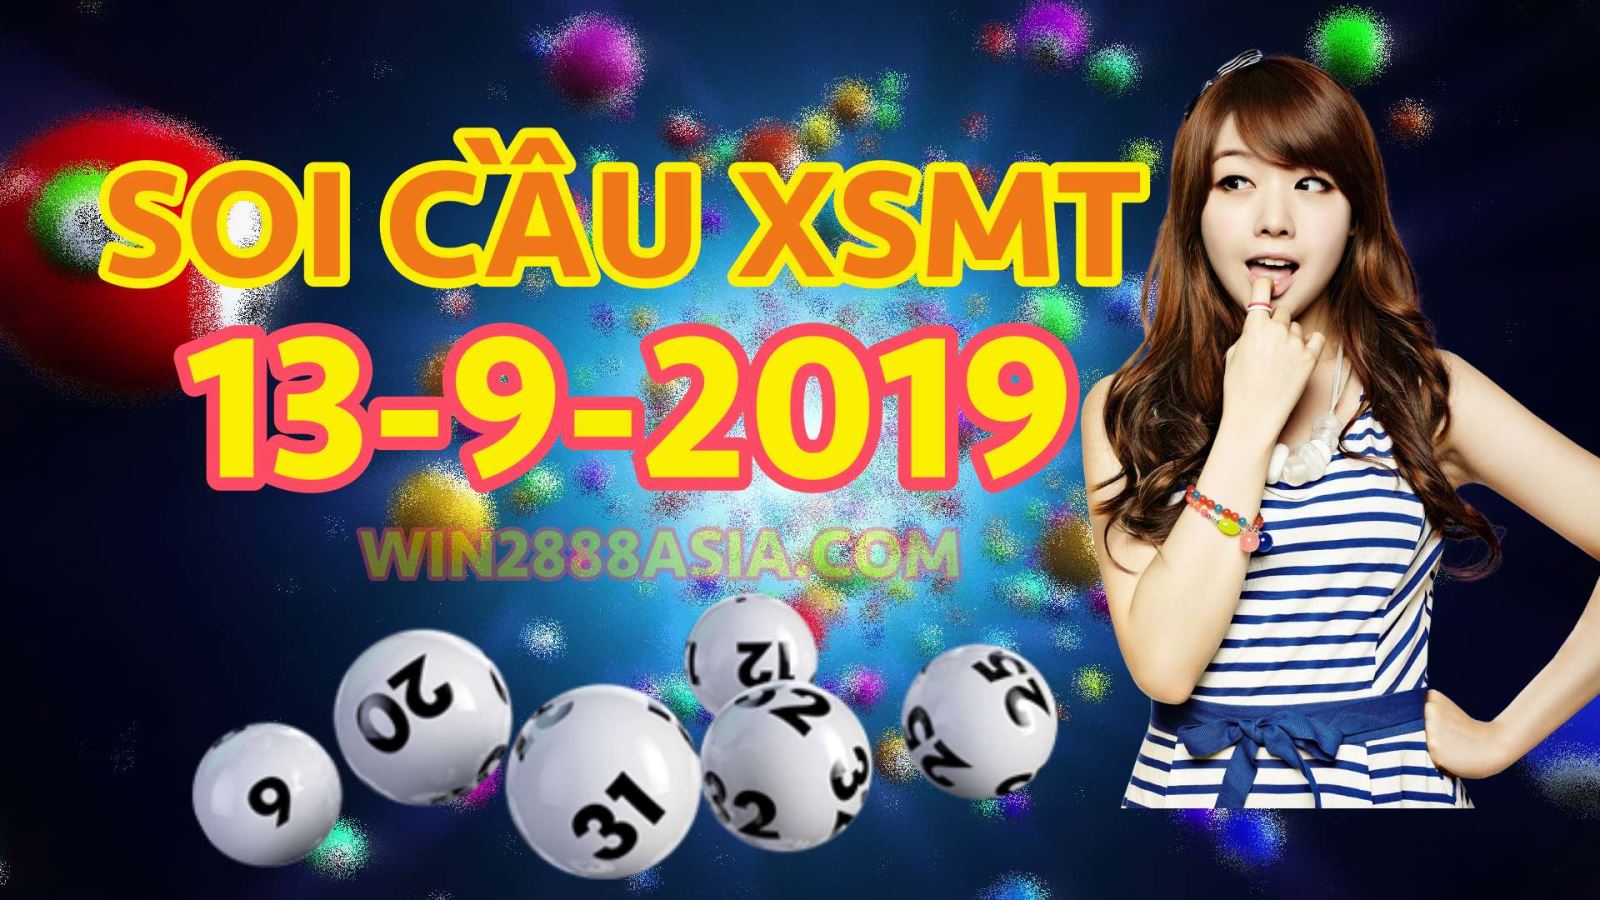 Soi cầu XSMT 13-9-2019 Win2888